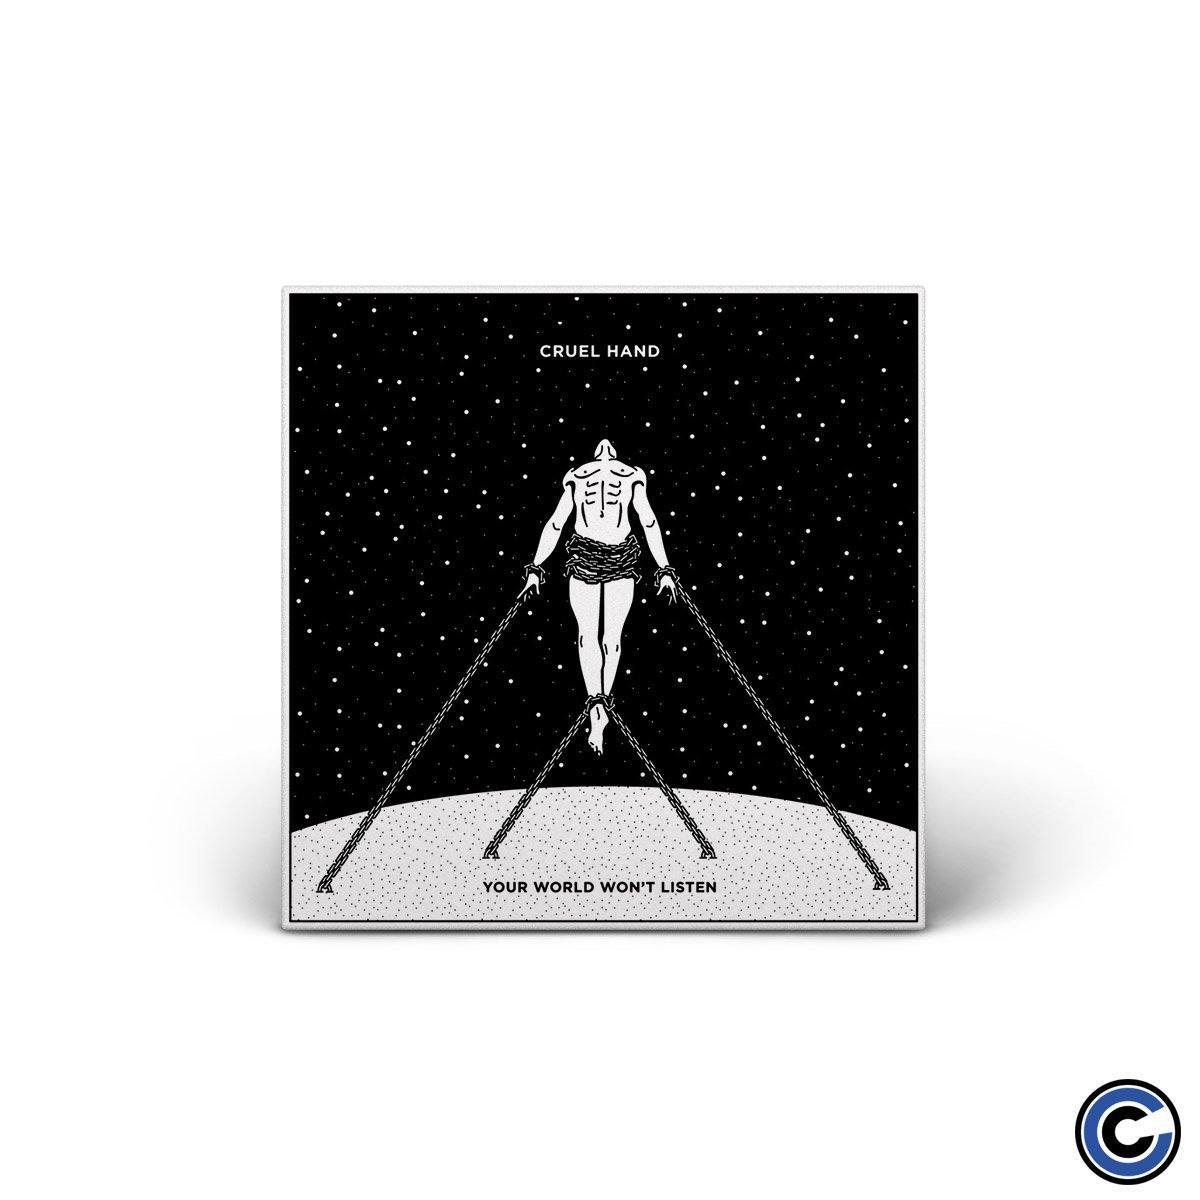 Buy – Cruel Hand "Your World Won't Listen" CD – Band & Music Merch – Cold Cuts Merch